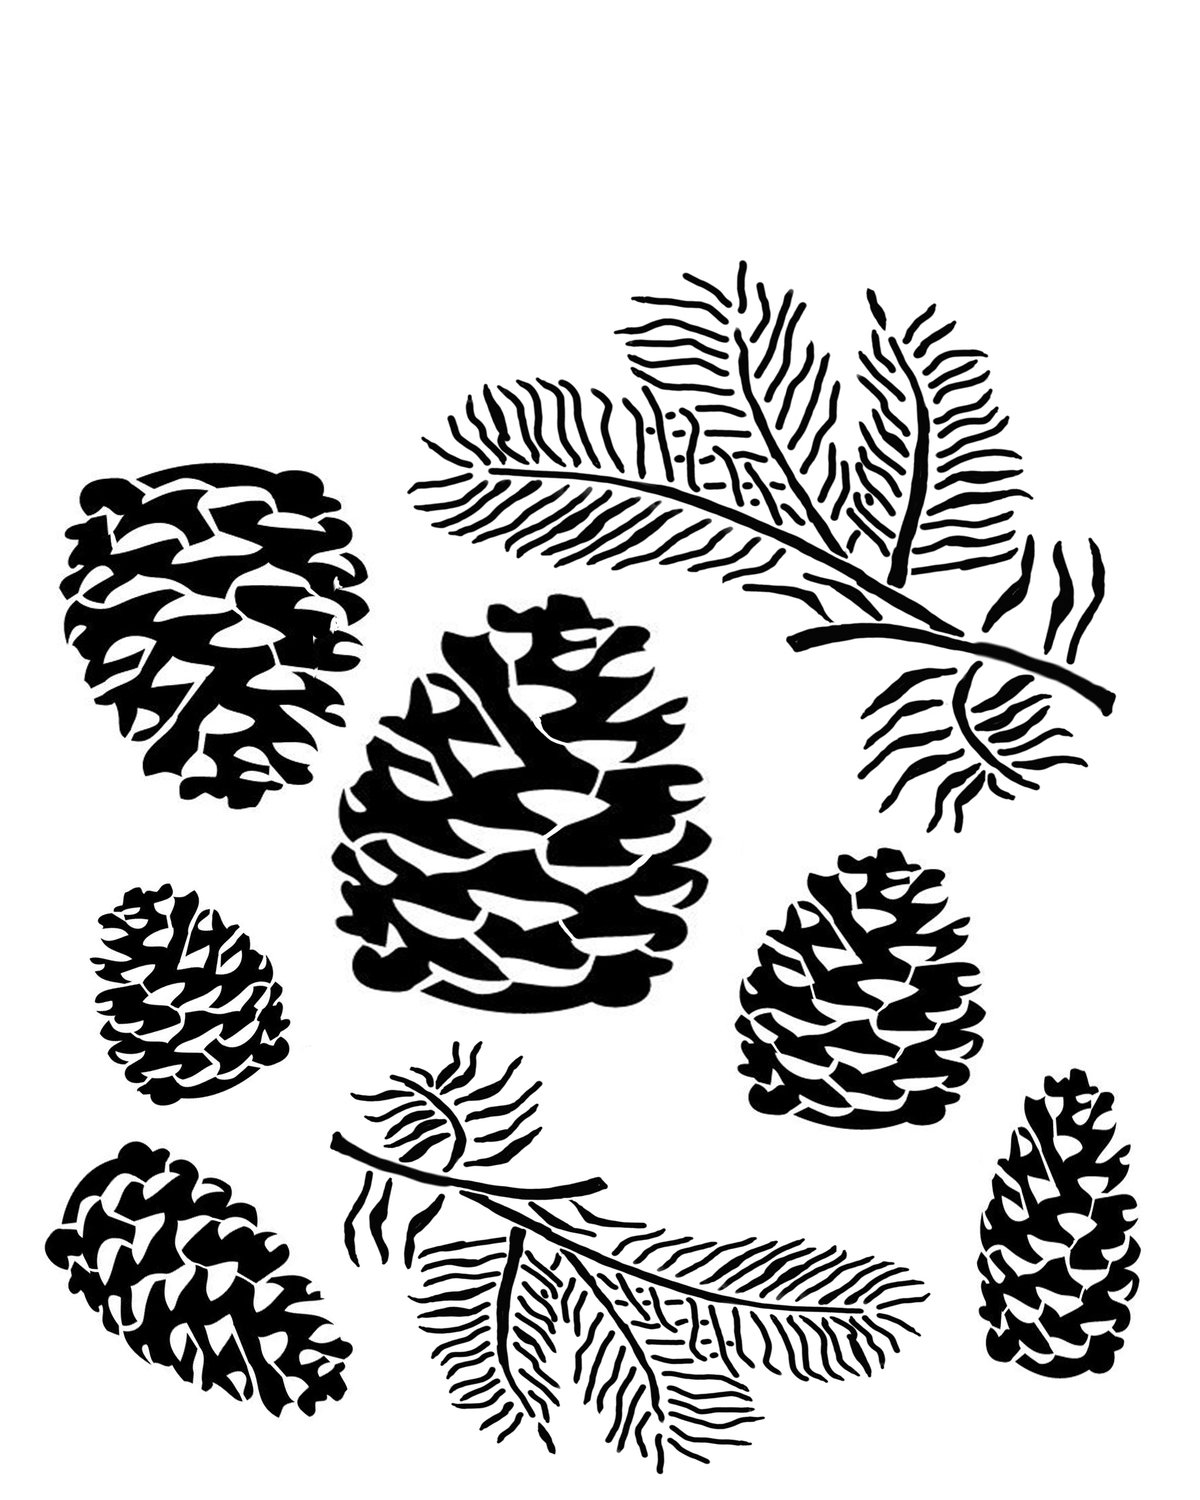 Pinecones stencil 8x10